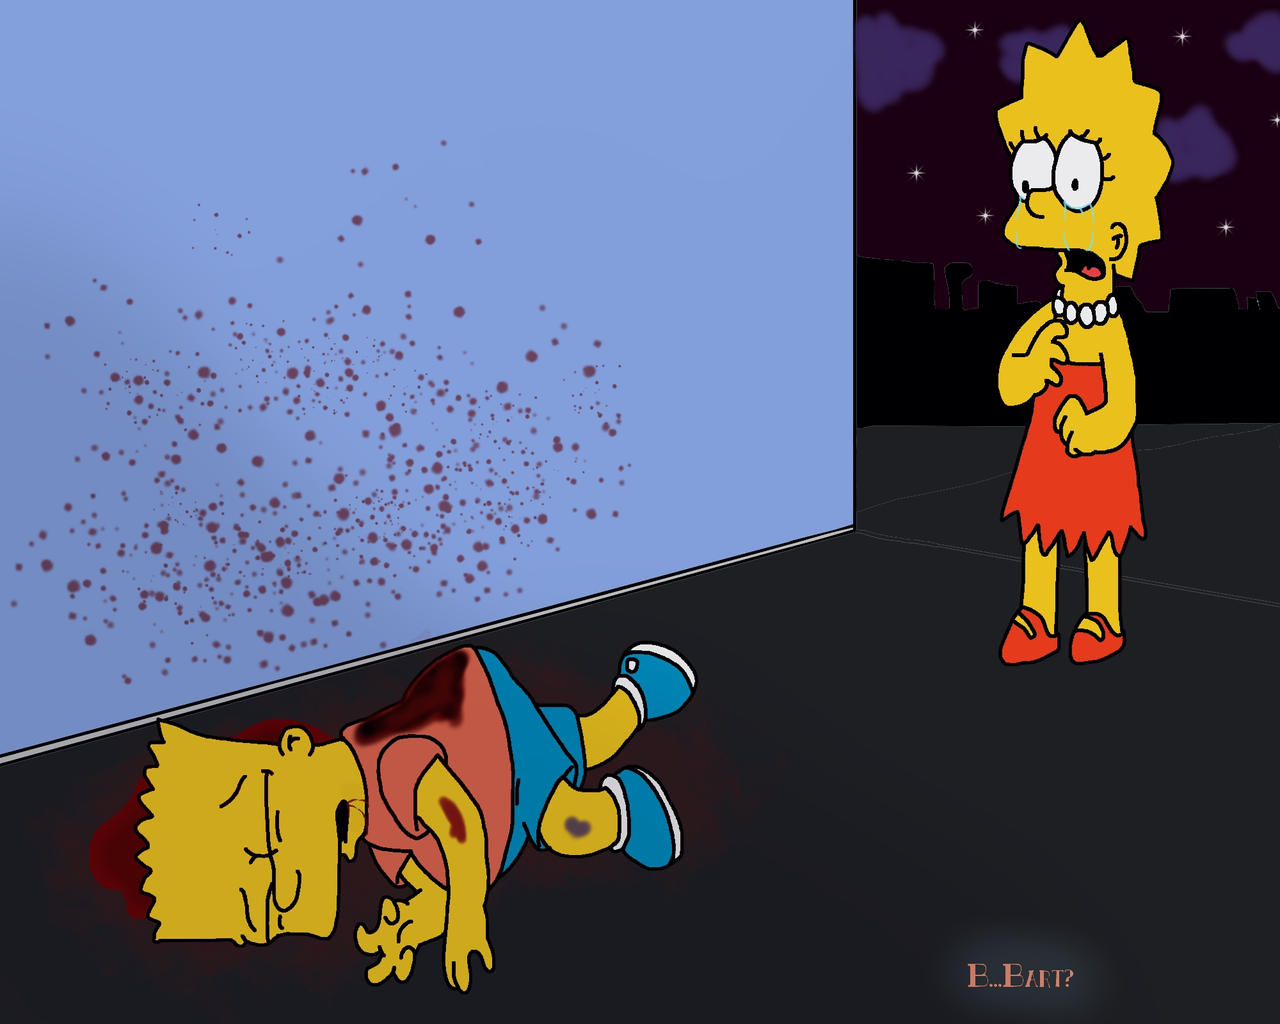 Dead Bart (Bart morto), Wikisimpsons